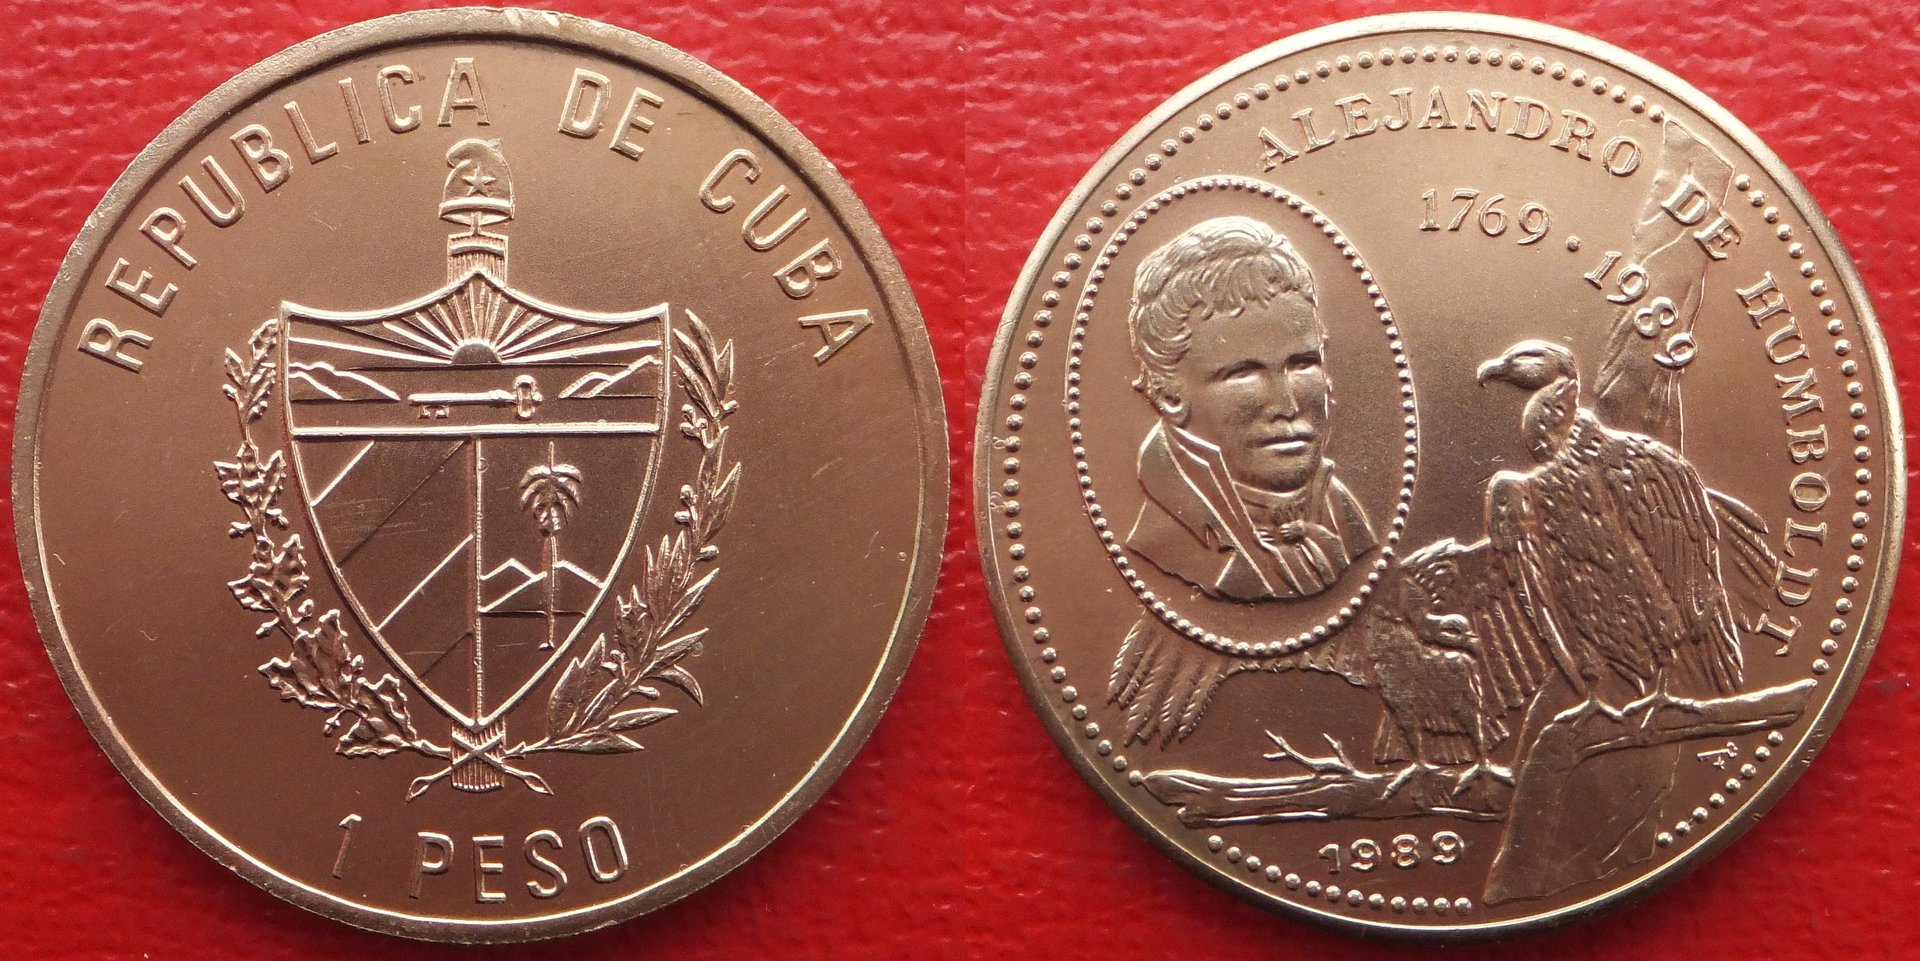 Cuba 1 peso 1989 (3).jpg